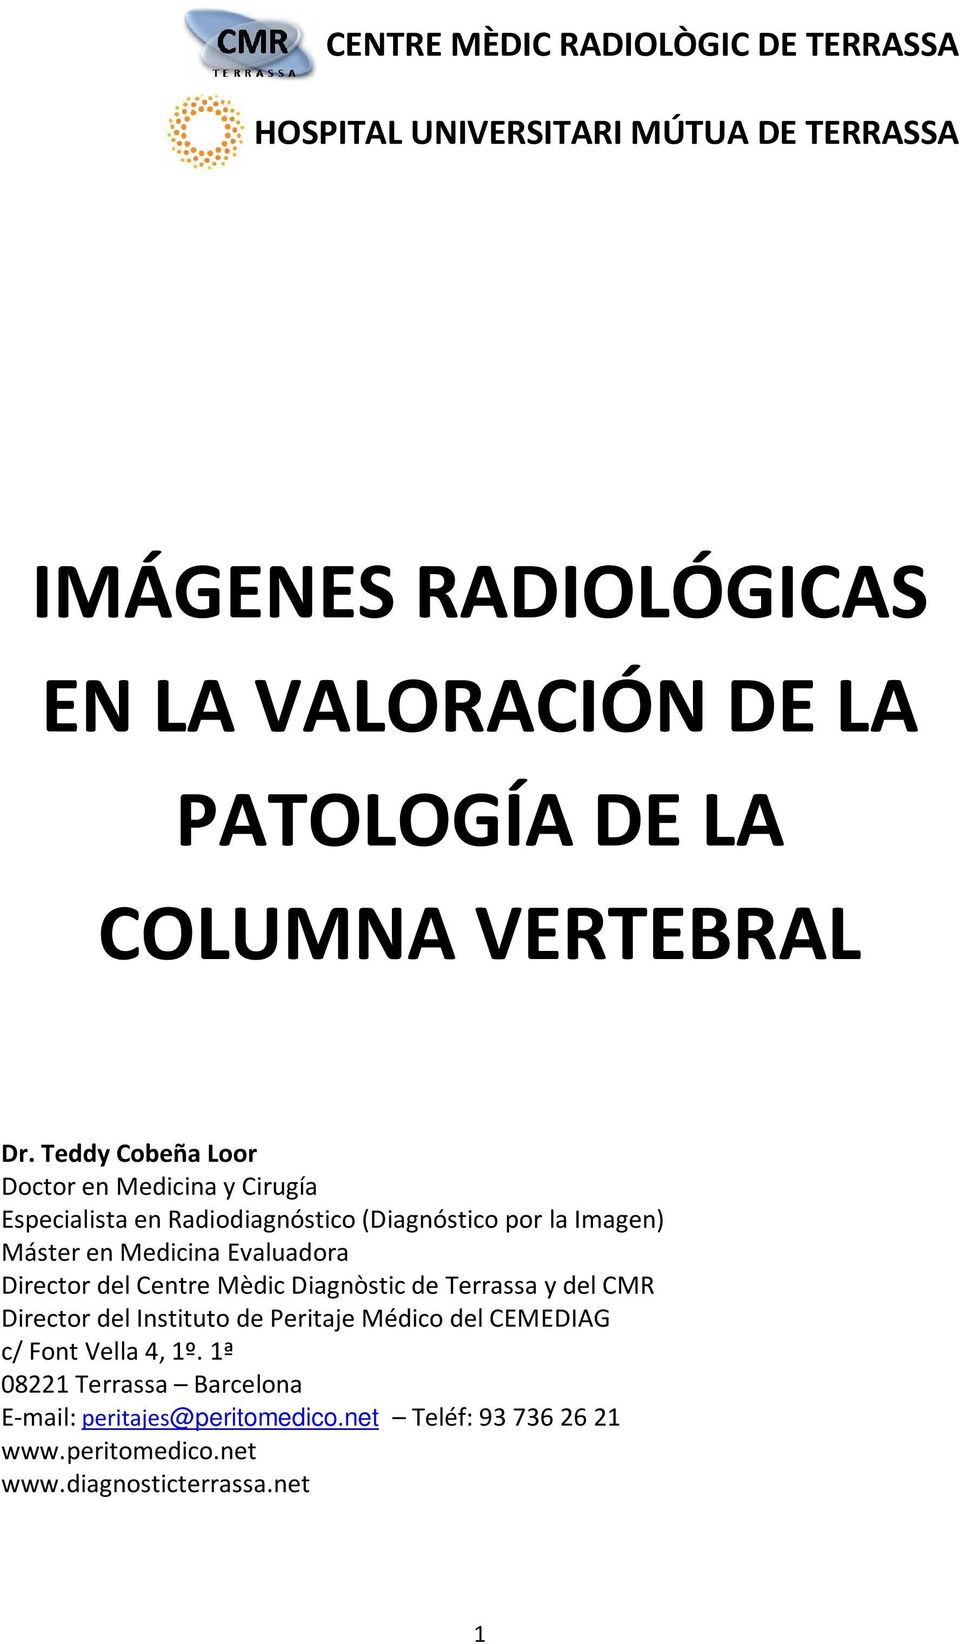 Teddy Cobeña Loor Doctor en Medicina y Cirugía Especialista en Radiodiagnóstico (Diagnóstico por la Imagen) Máster en Medicina Evaluadora